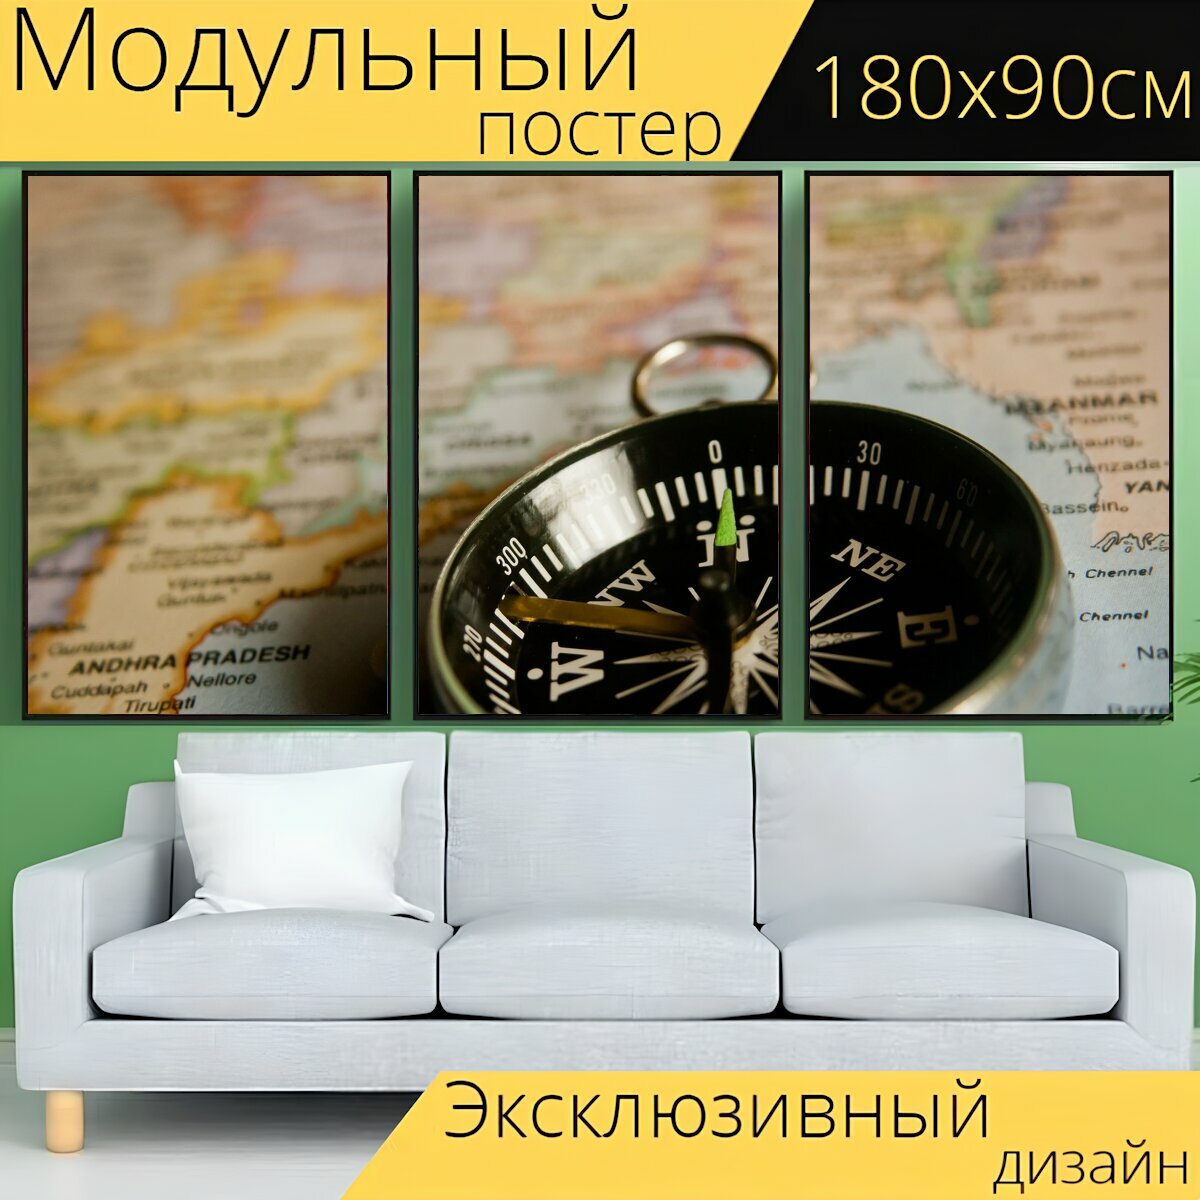 Модульный постер "Компас, навигация, карта" 180 x 90 см. для интерьера